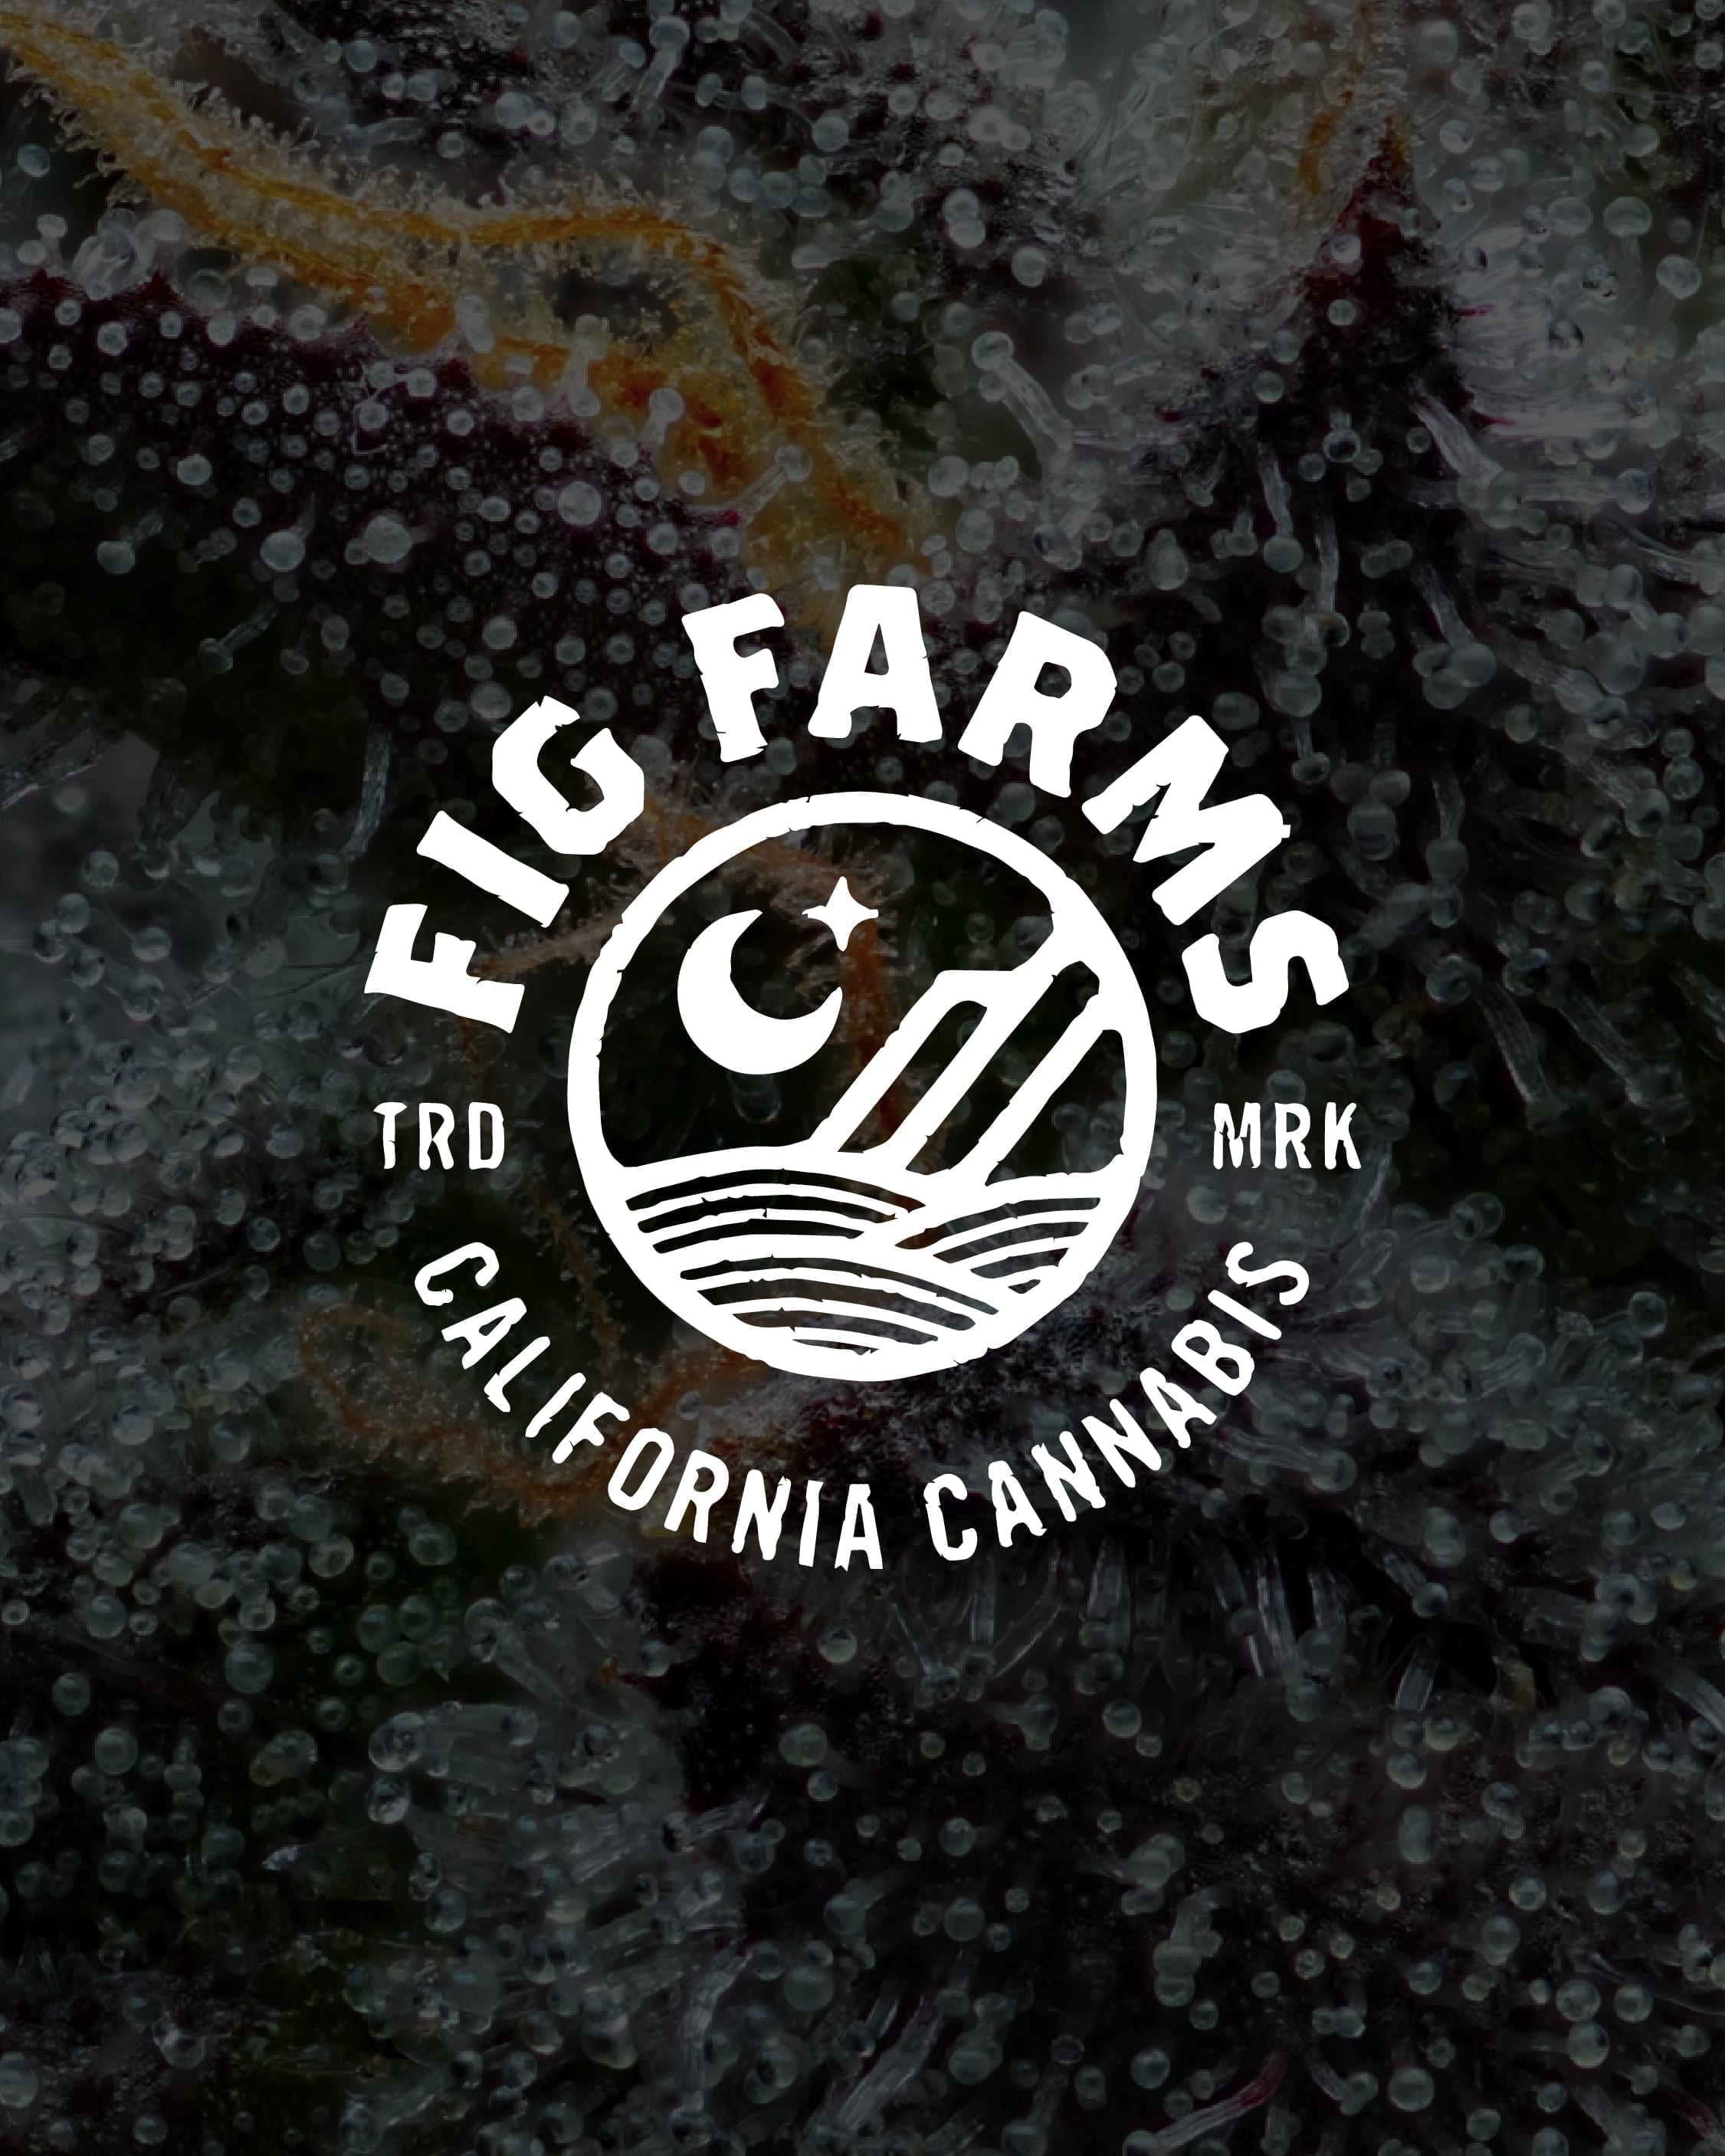 Fig Farms California Cannabis near me